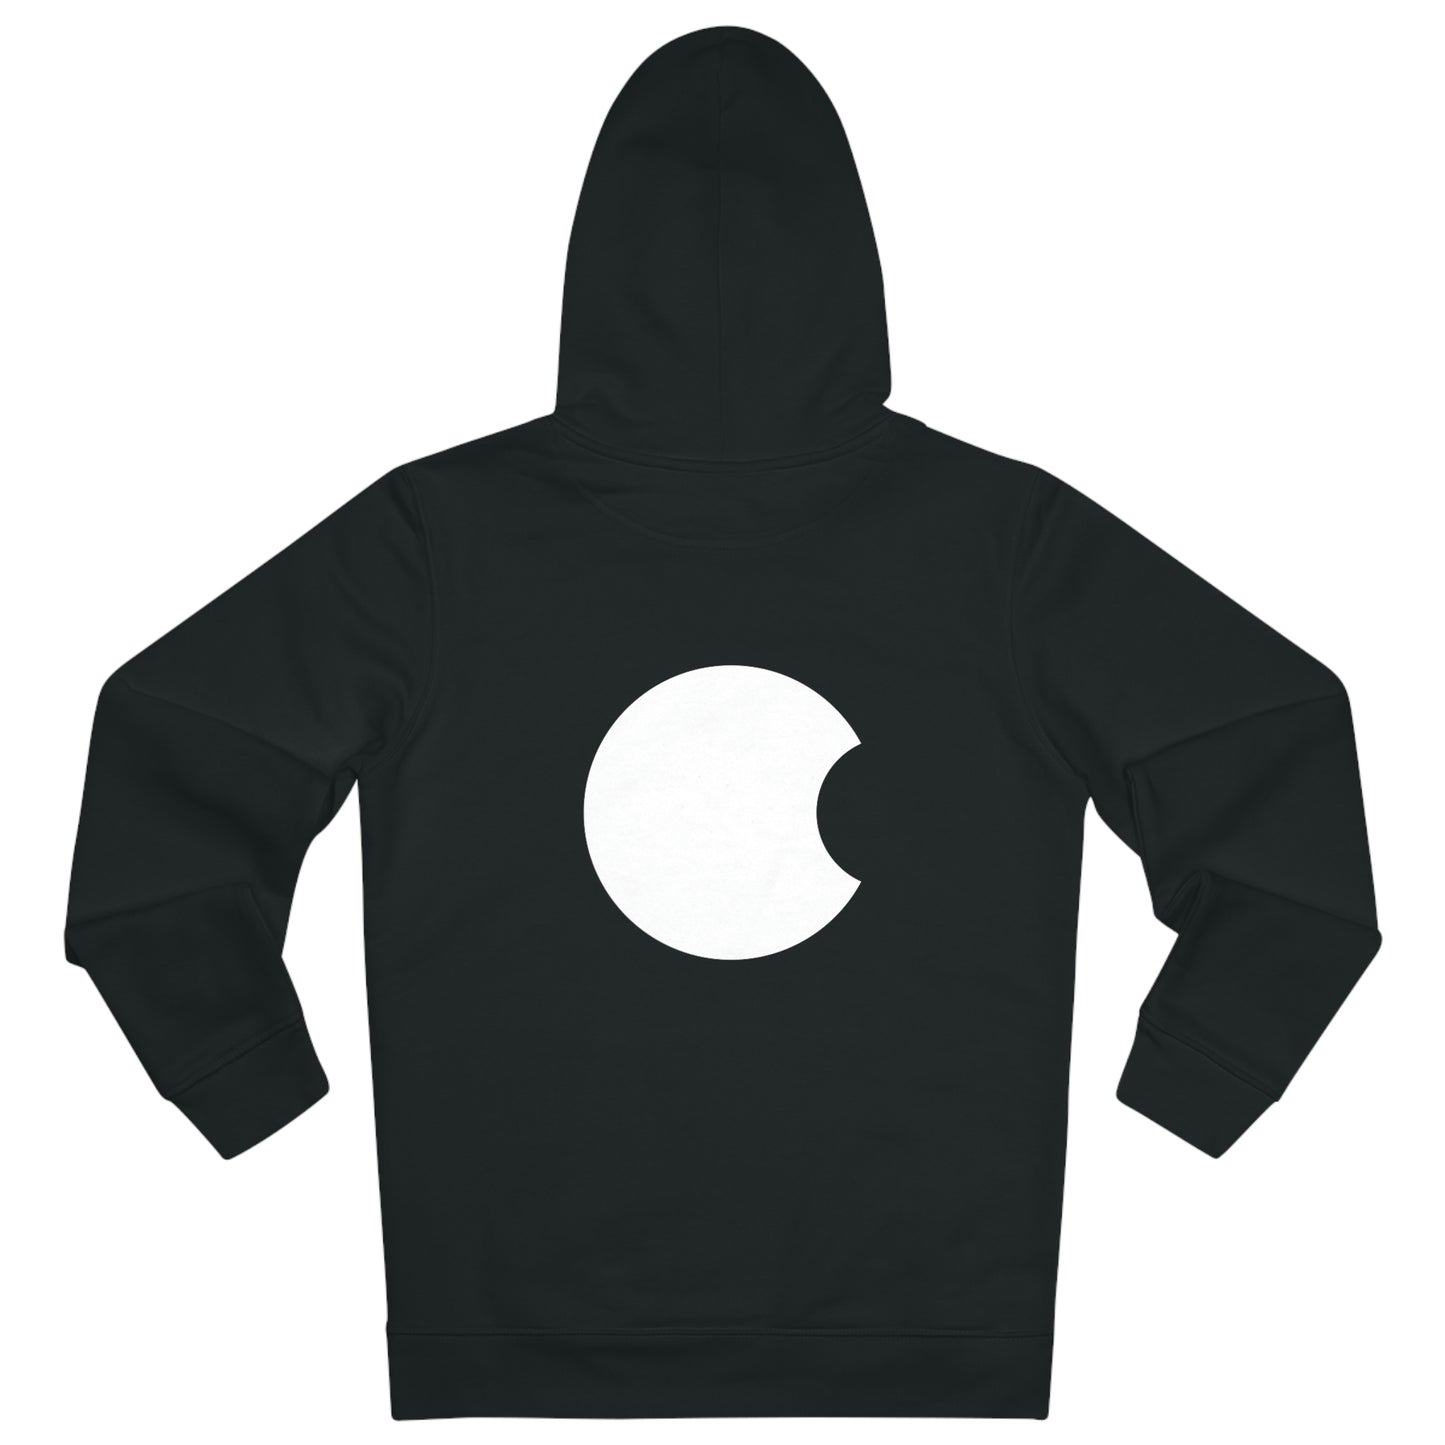 enter.art - Black hoodie